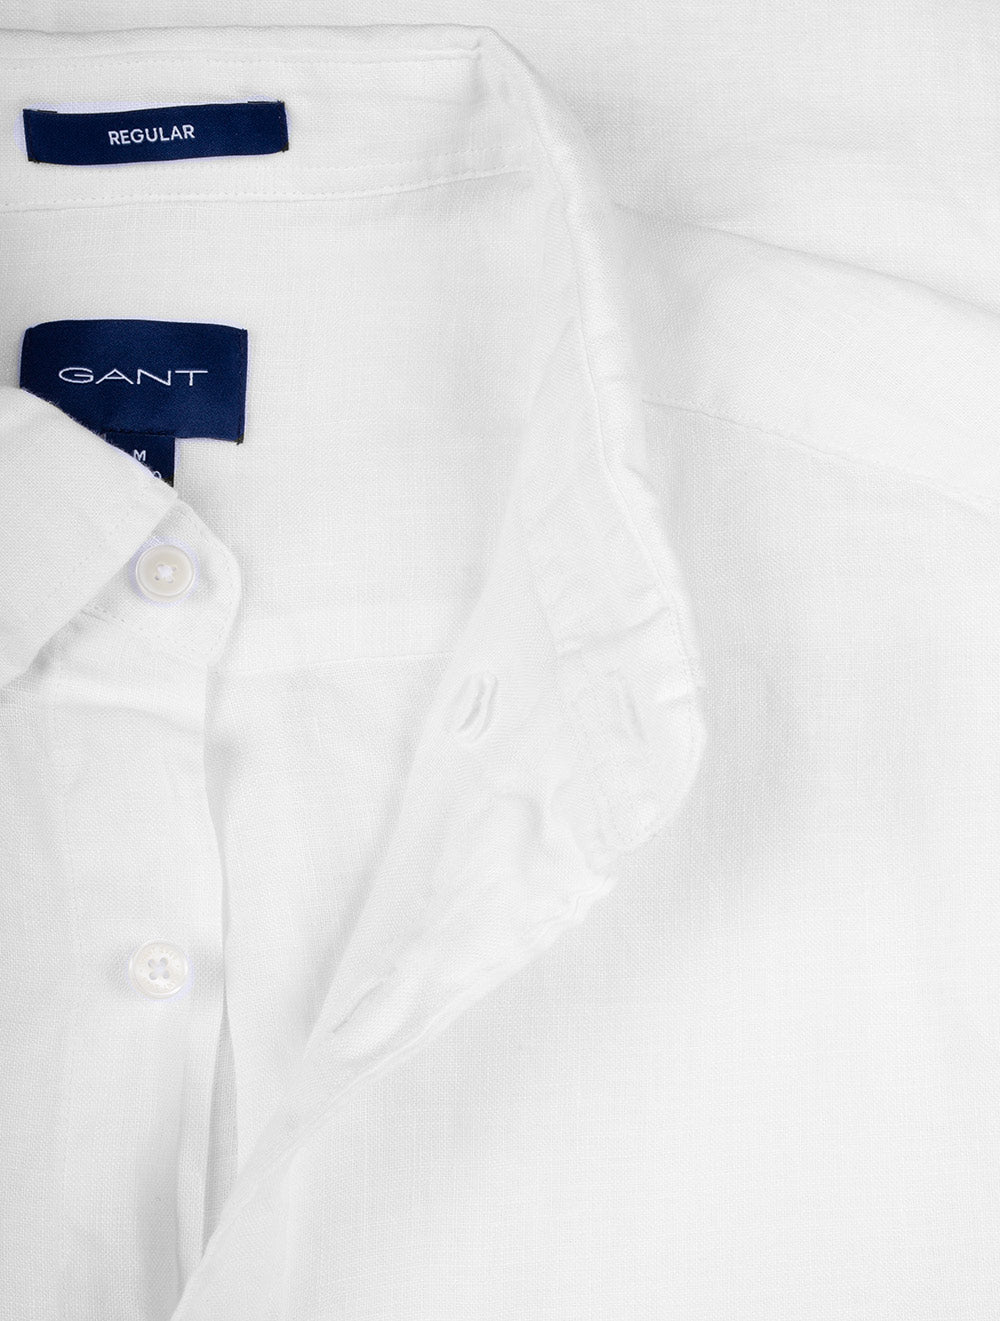 Regular Linen Short Sleeve Shirt White